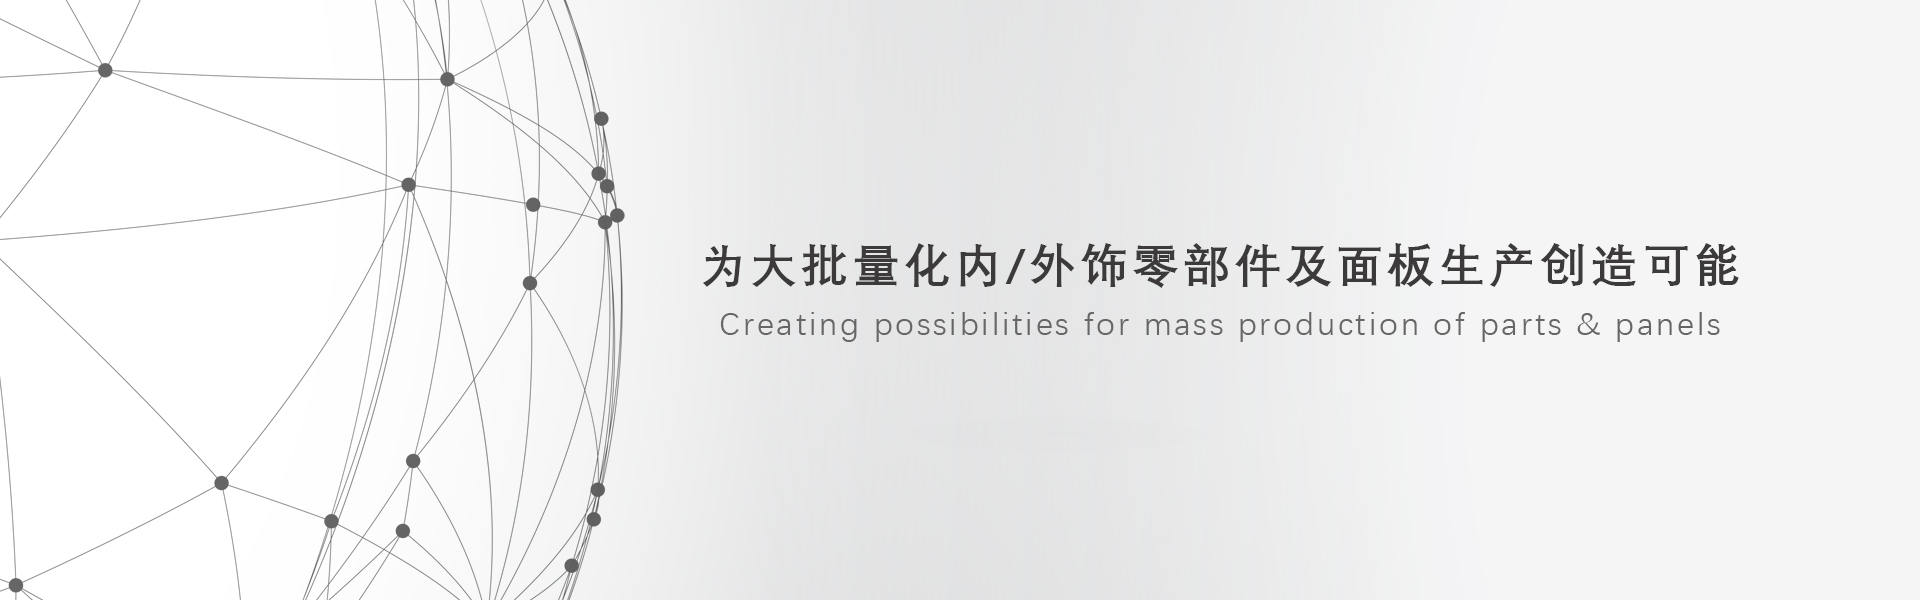 尊龙凯时人生就是搏(中国区)官方网站